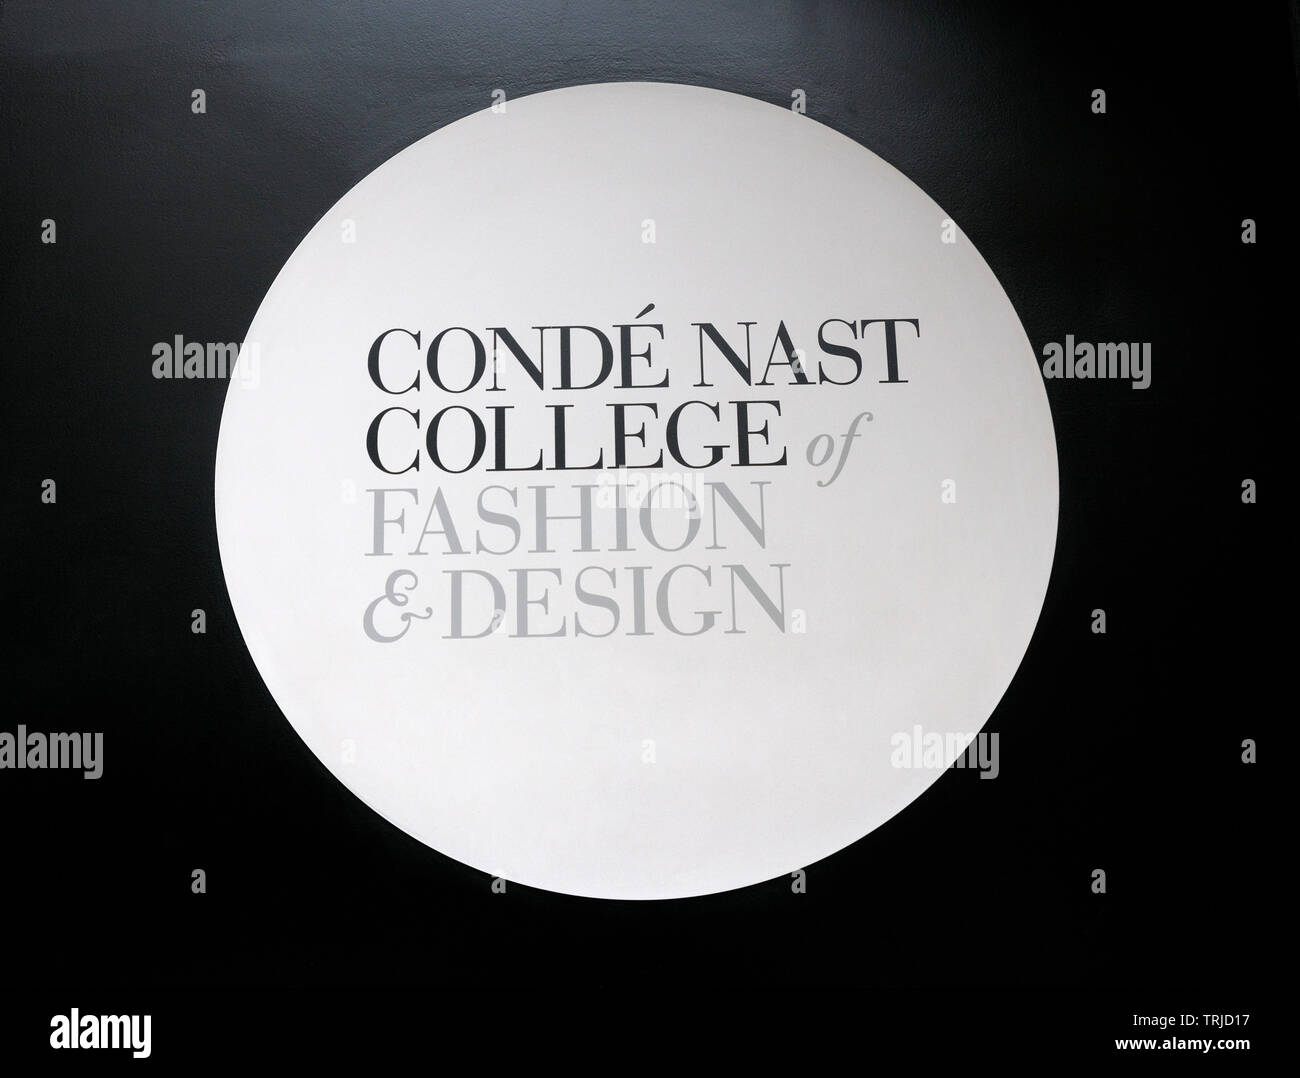 Il logo presso l'ingresso della Condé Nast College di Moda & Design, Greek Street, Soho, London, England, Regno Unito Foto Stock